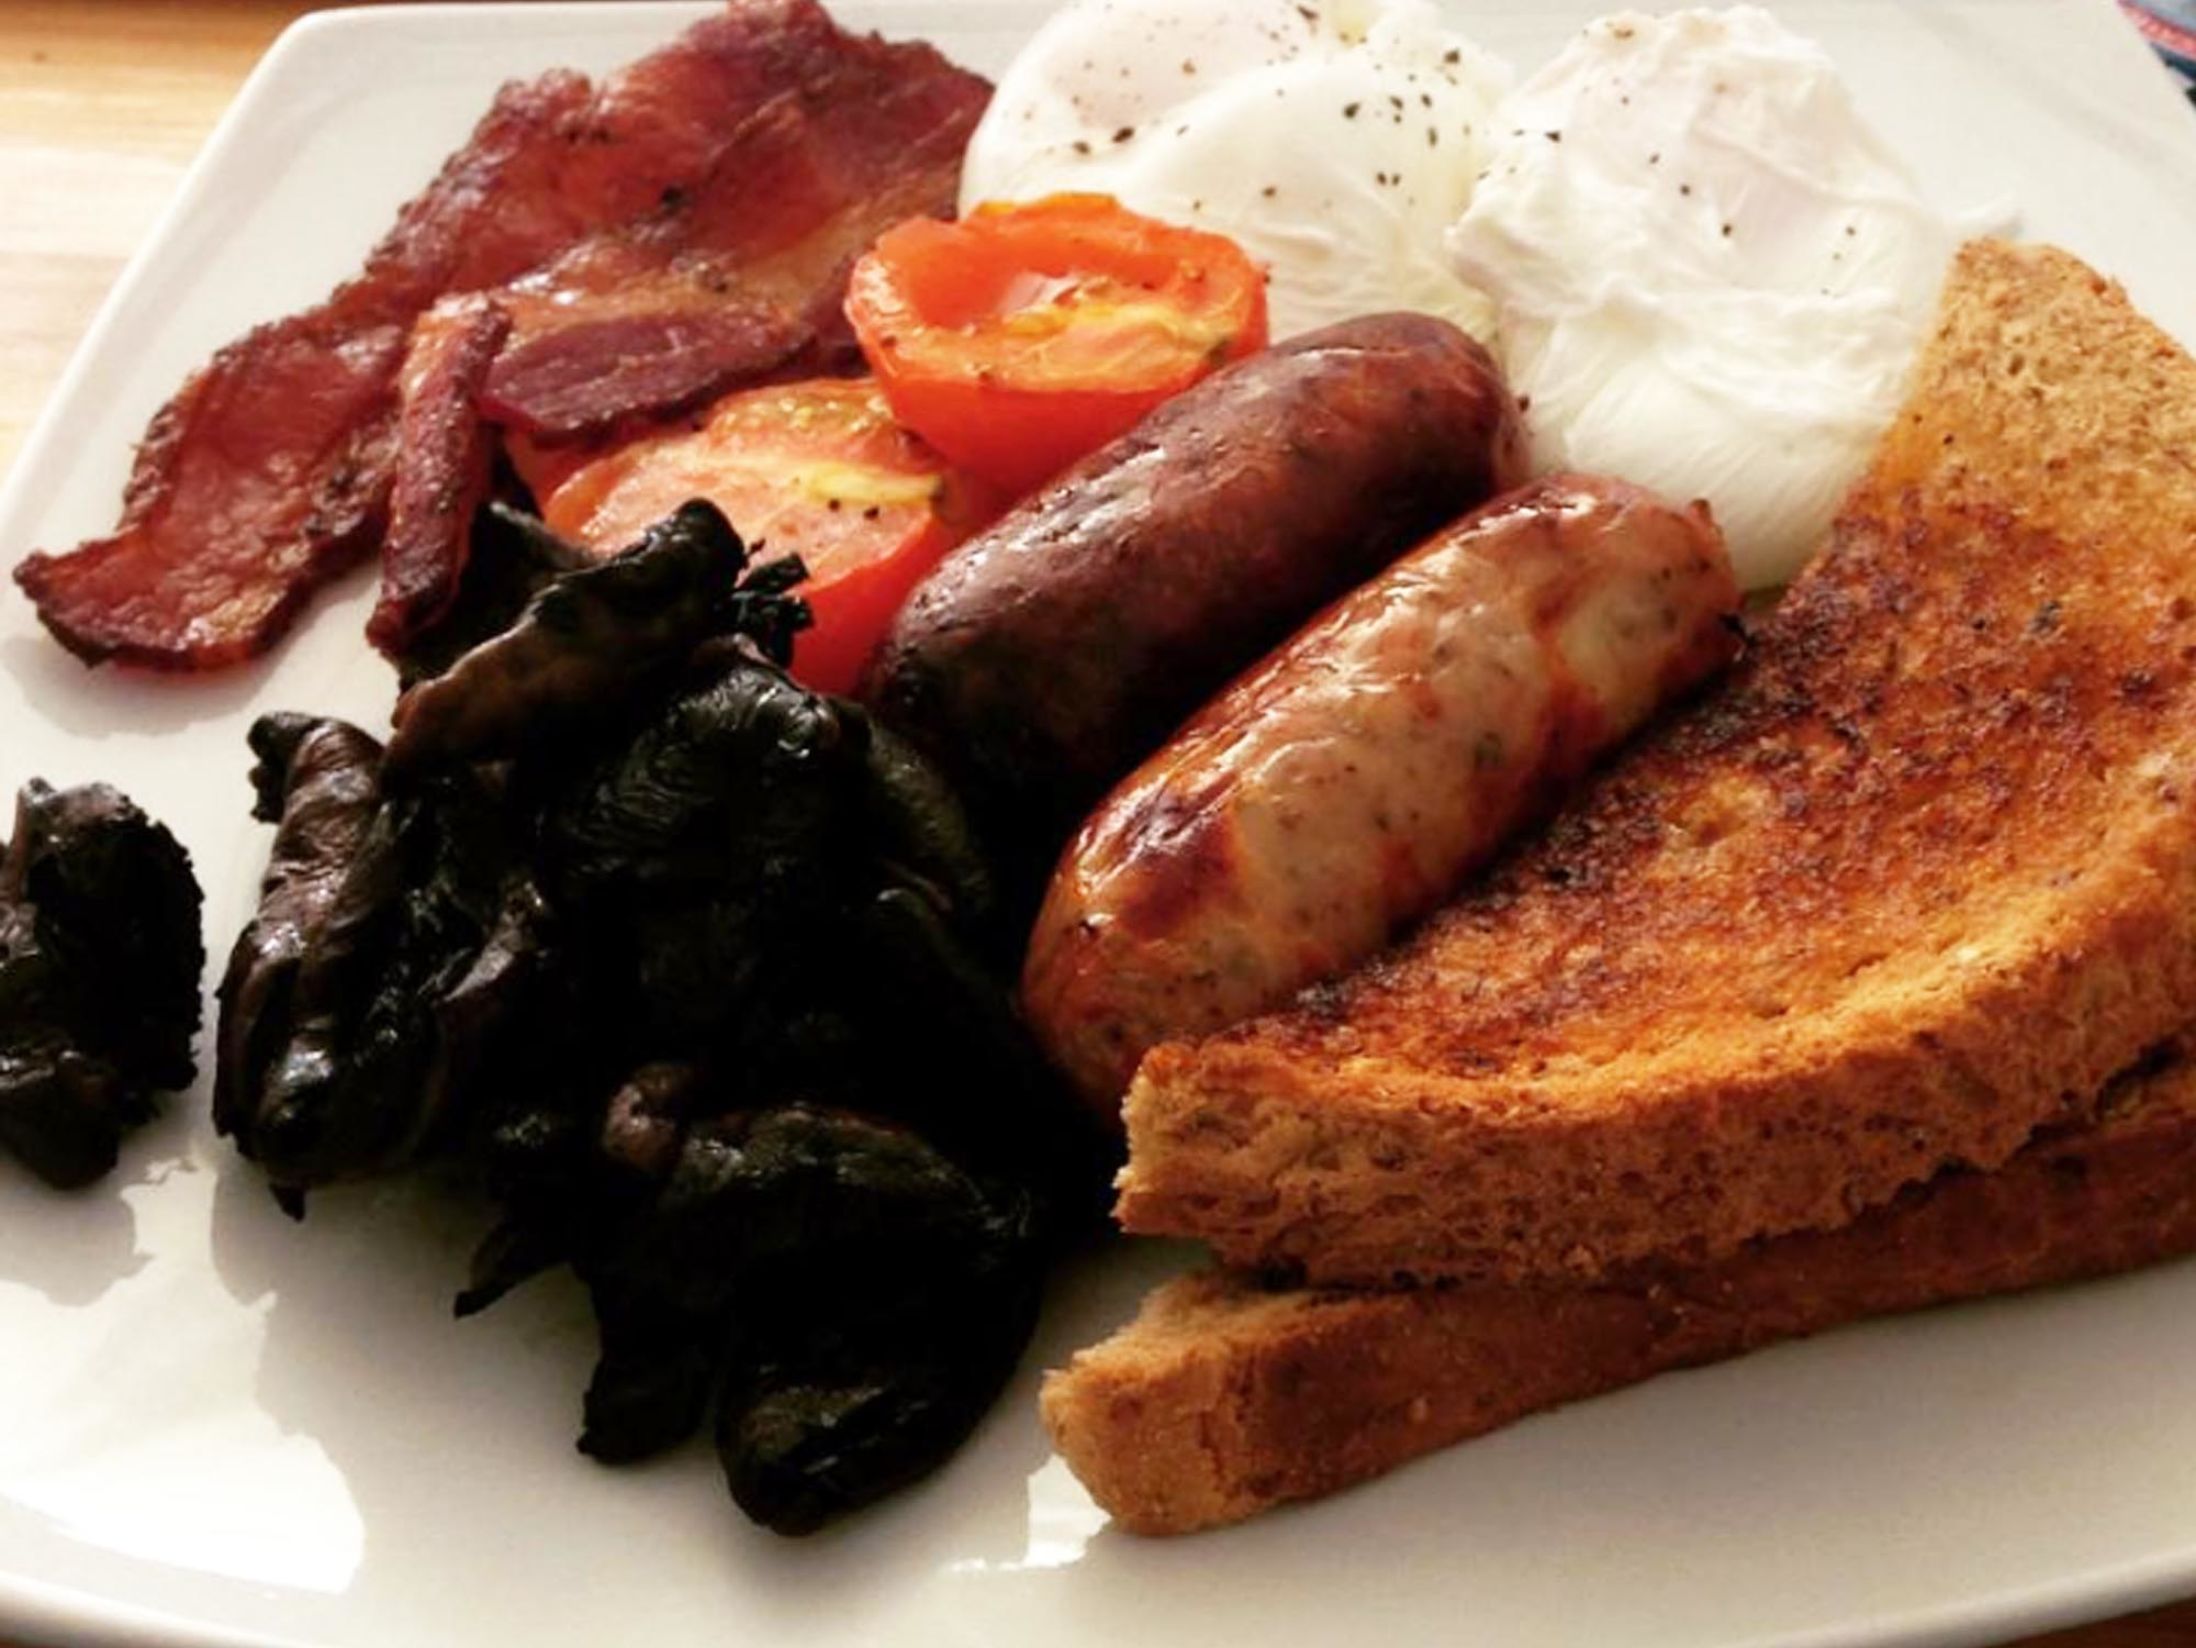 Best Breakfast in Birmingham - Urban Cafe